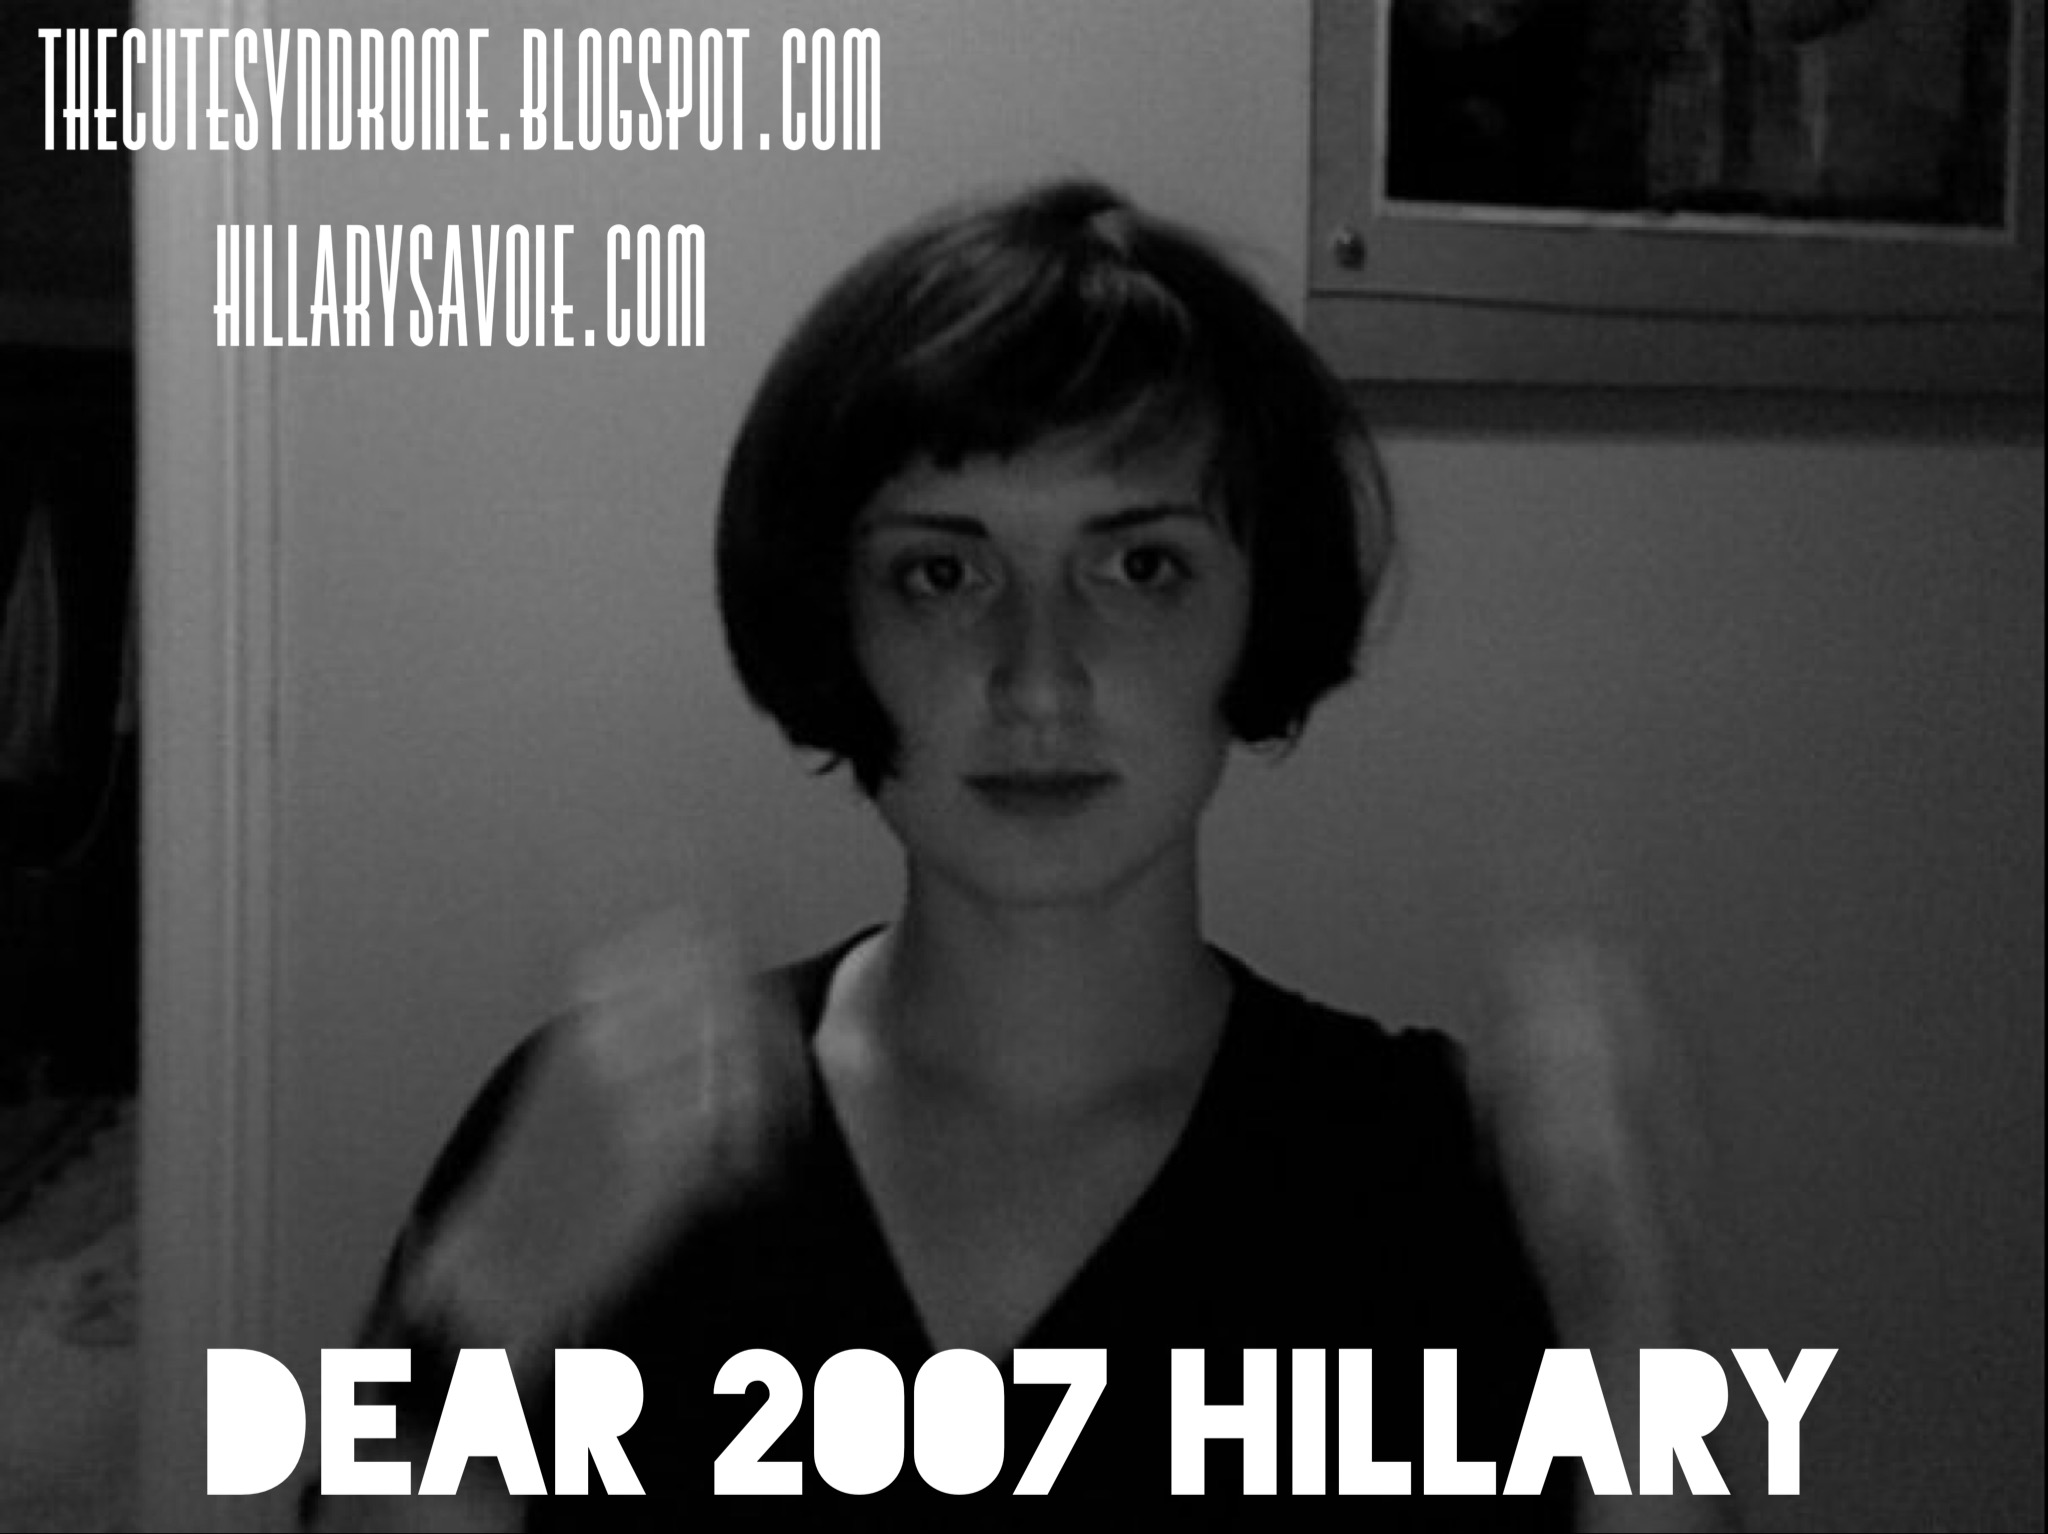 Dear 2007 Hillary